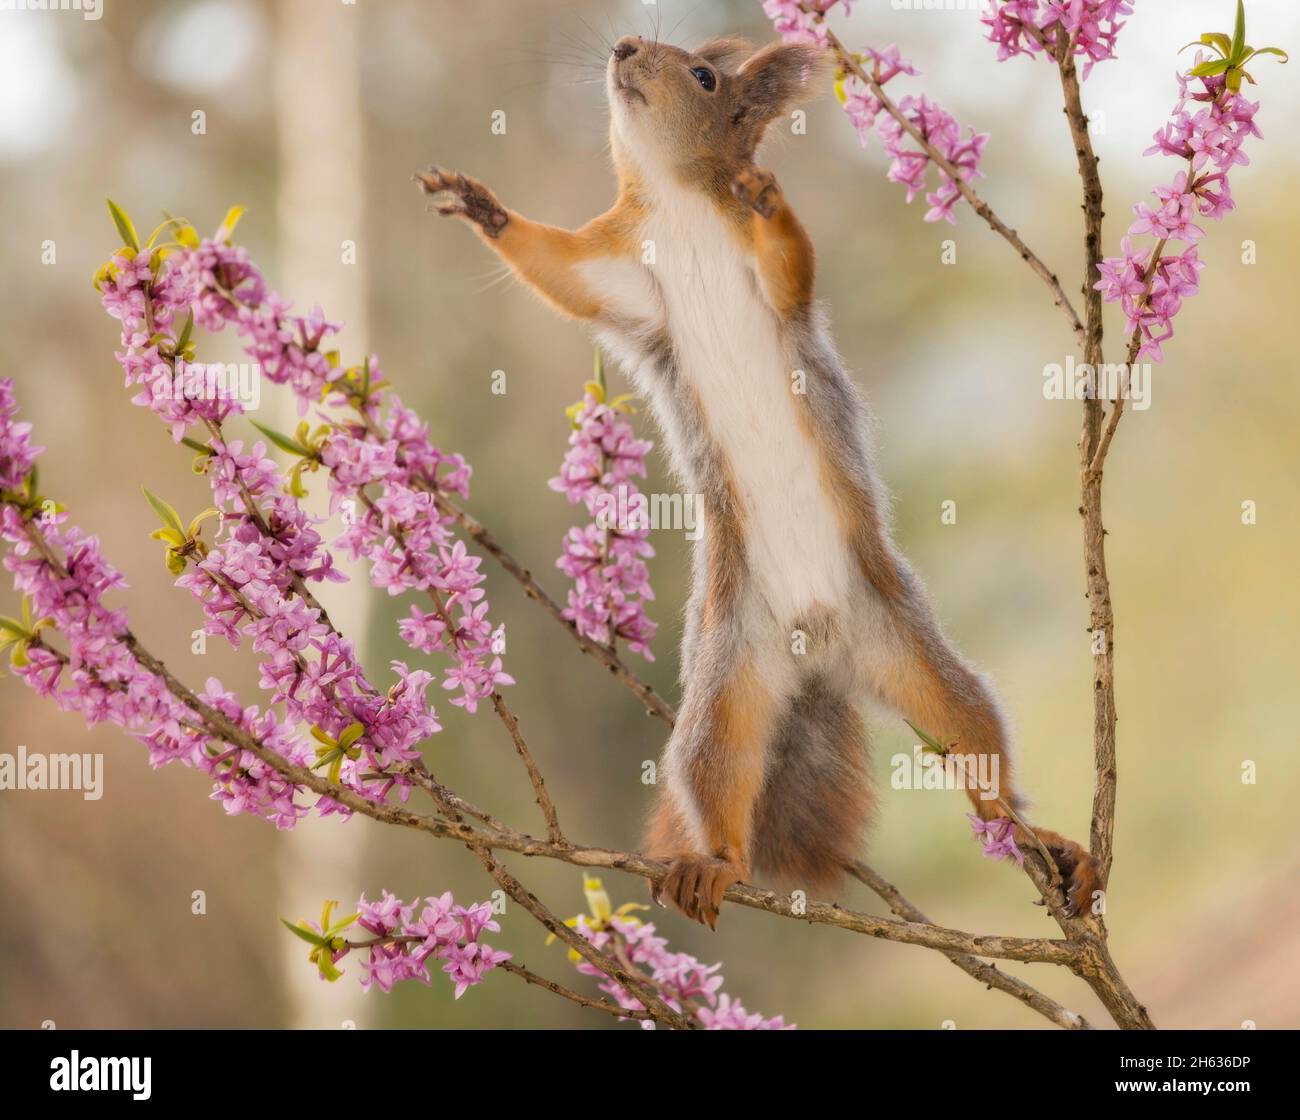 Nahaufnahme des roten Eichhörnchens, das sich auf Ästen mit sich reichenden Blumen ausstreckt Stockfoto